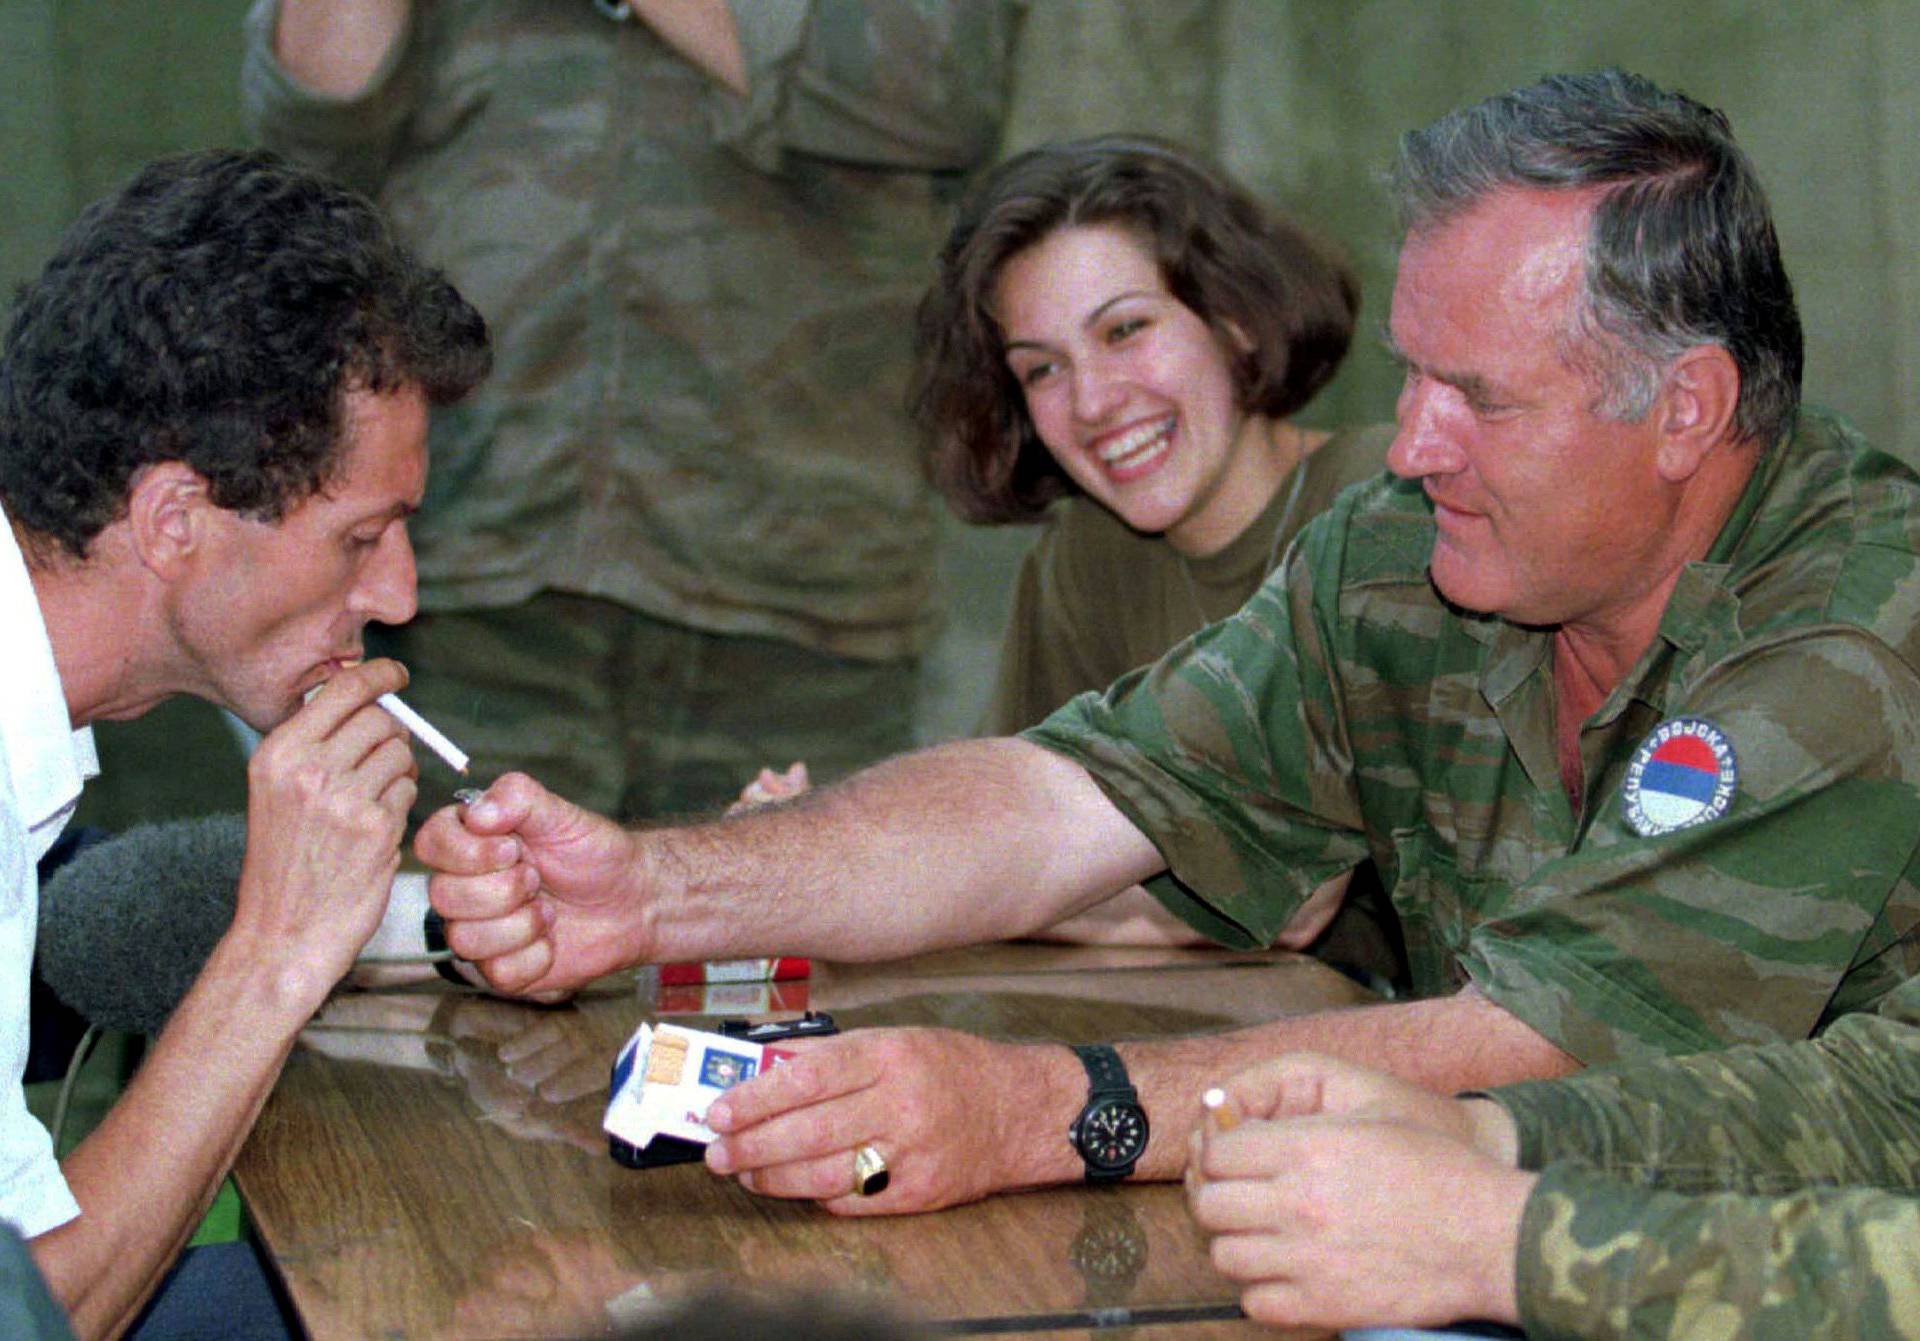 FILE PHOTO: Bosnian Serb wartime general Ratko Mladic